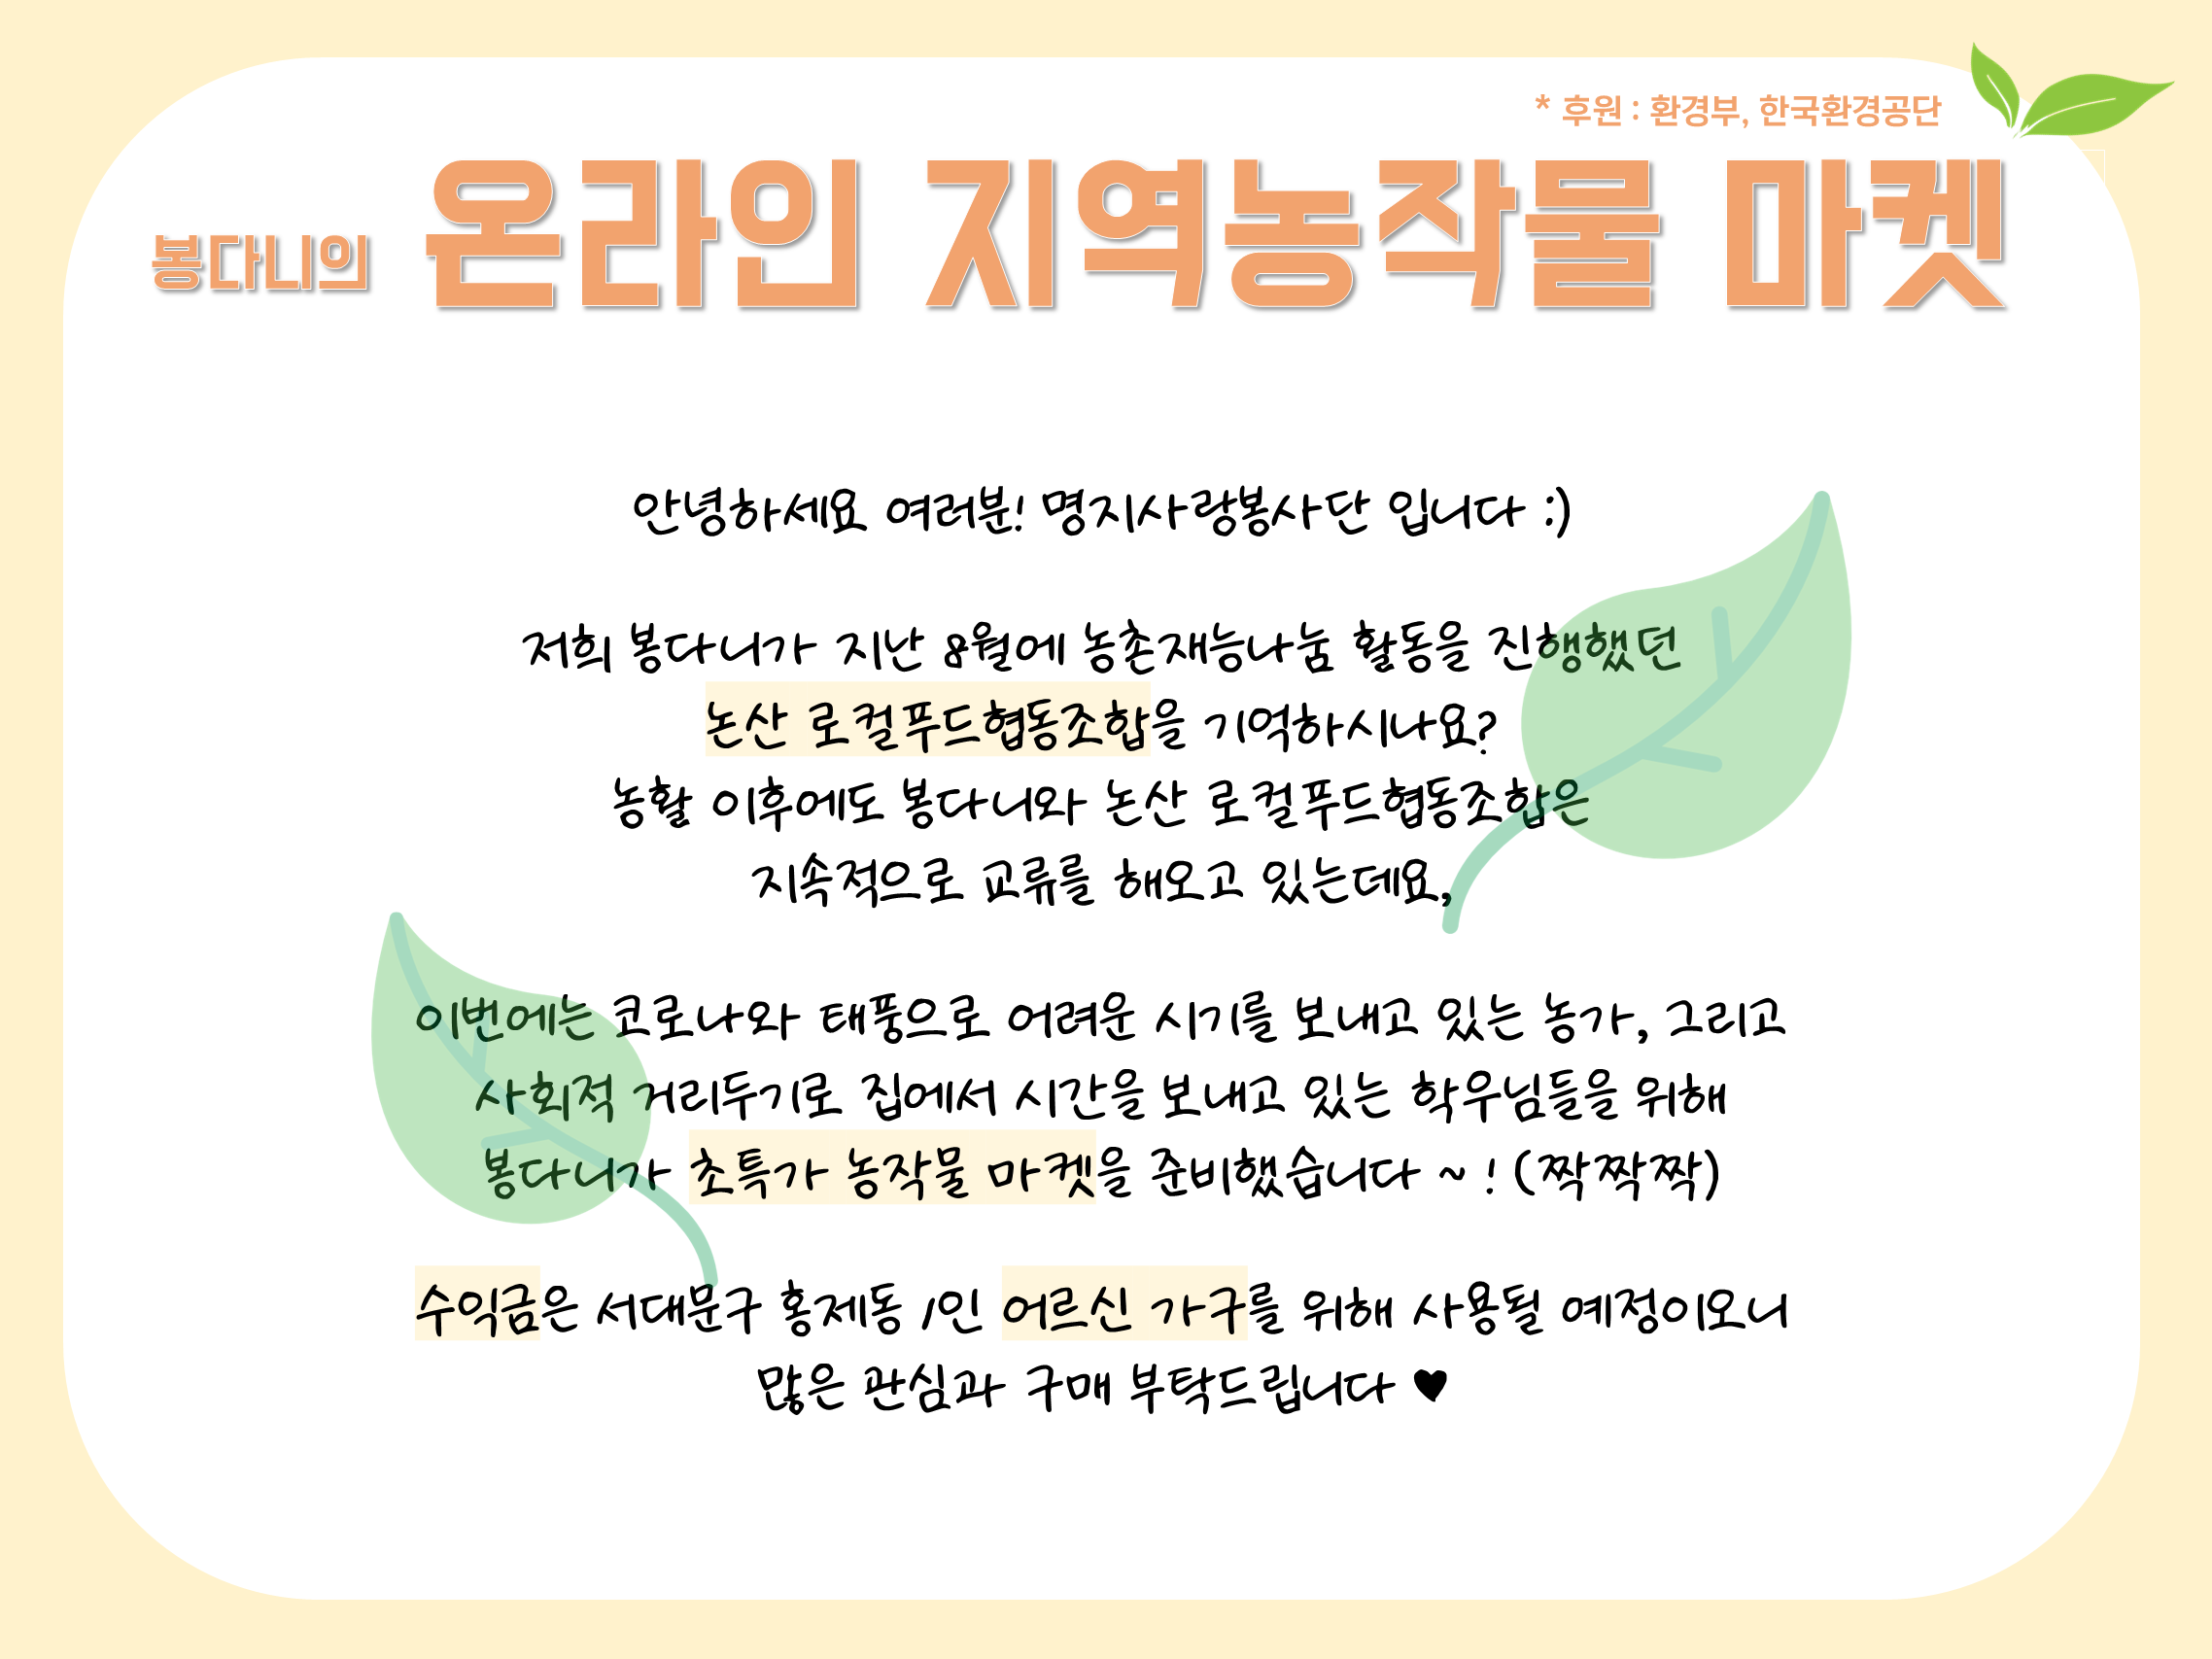 명지사랑봉사단, ‘봉다니 온라인 지역 농작물 마켓’ 행사 열어 첨부 이미지